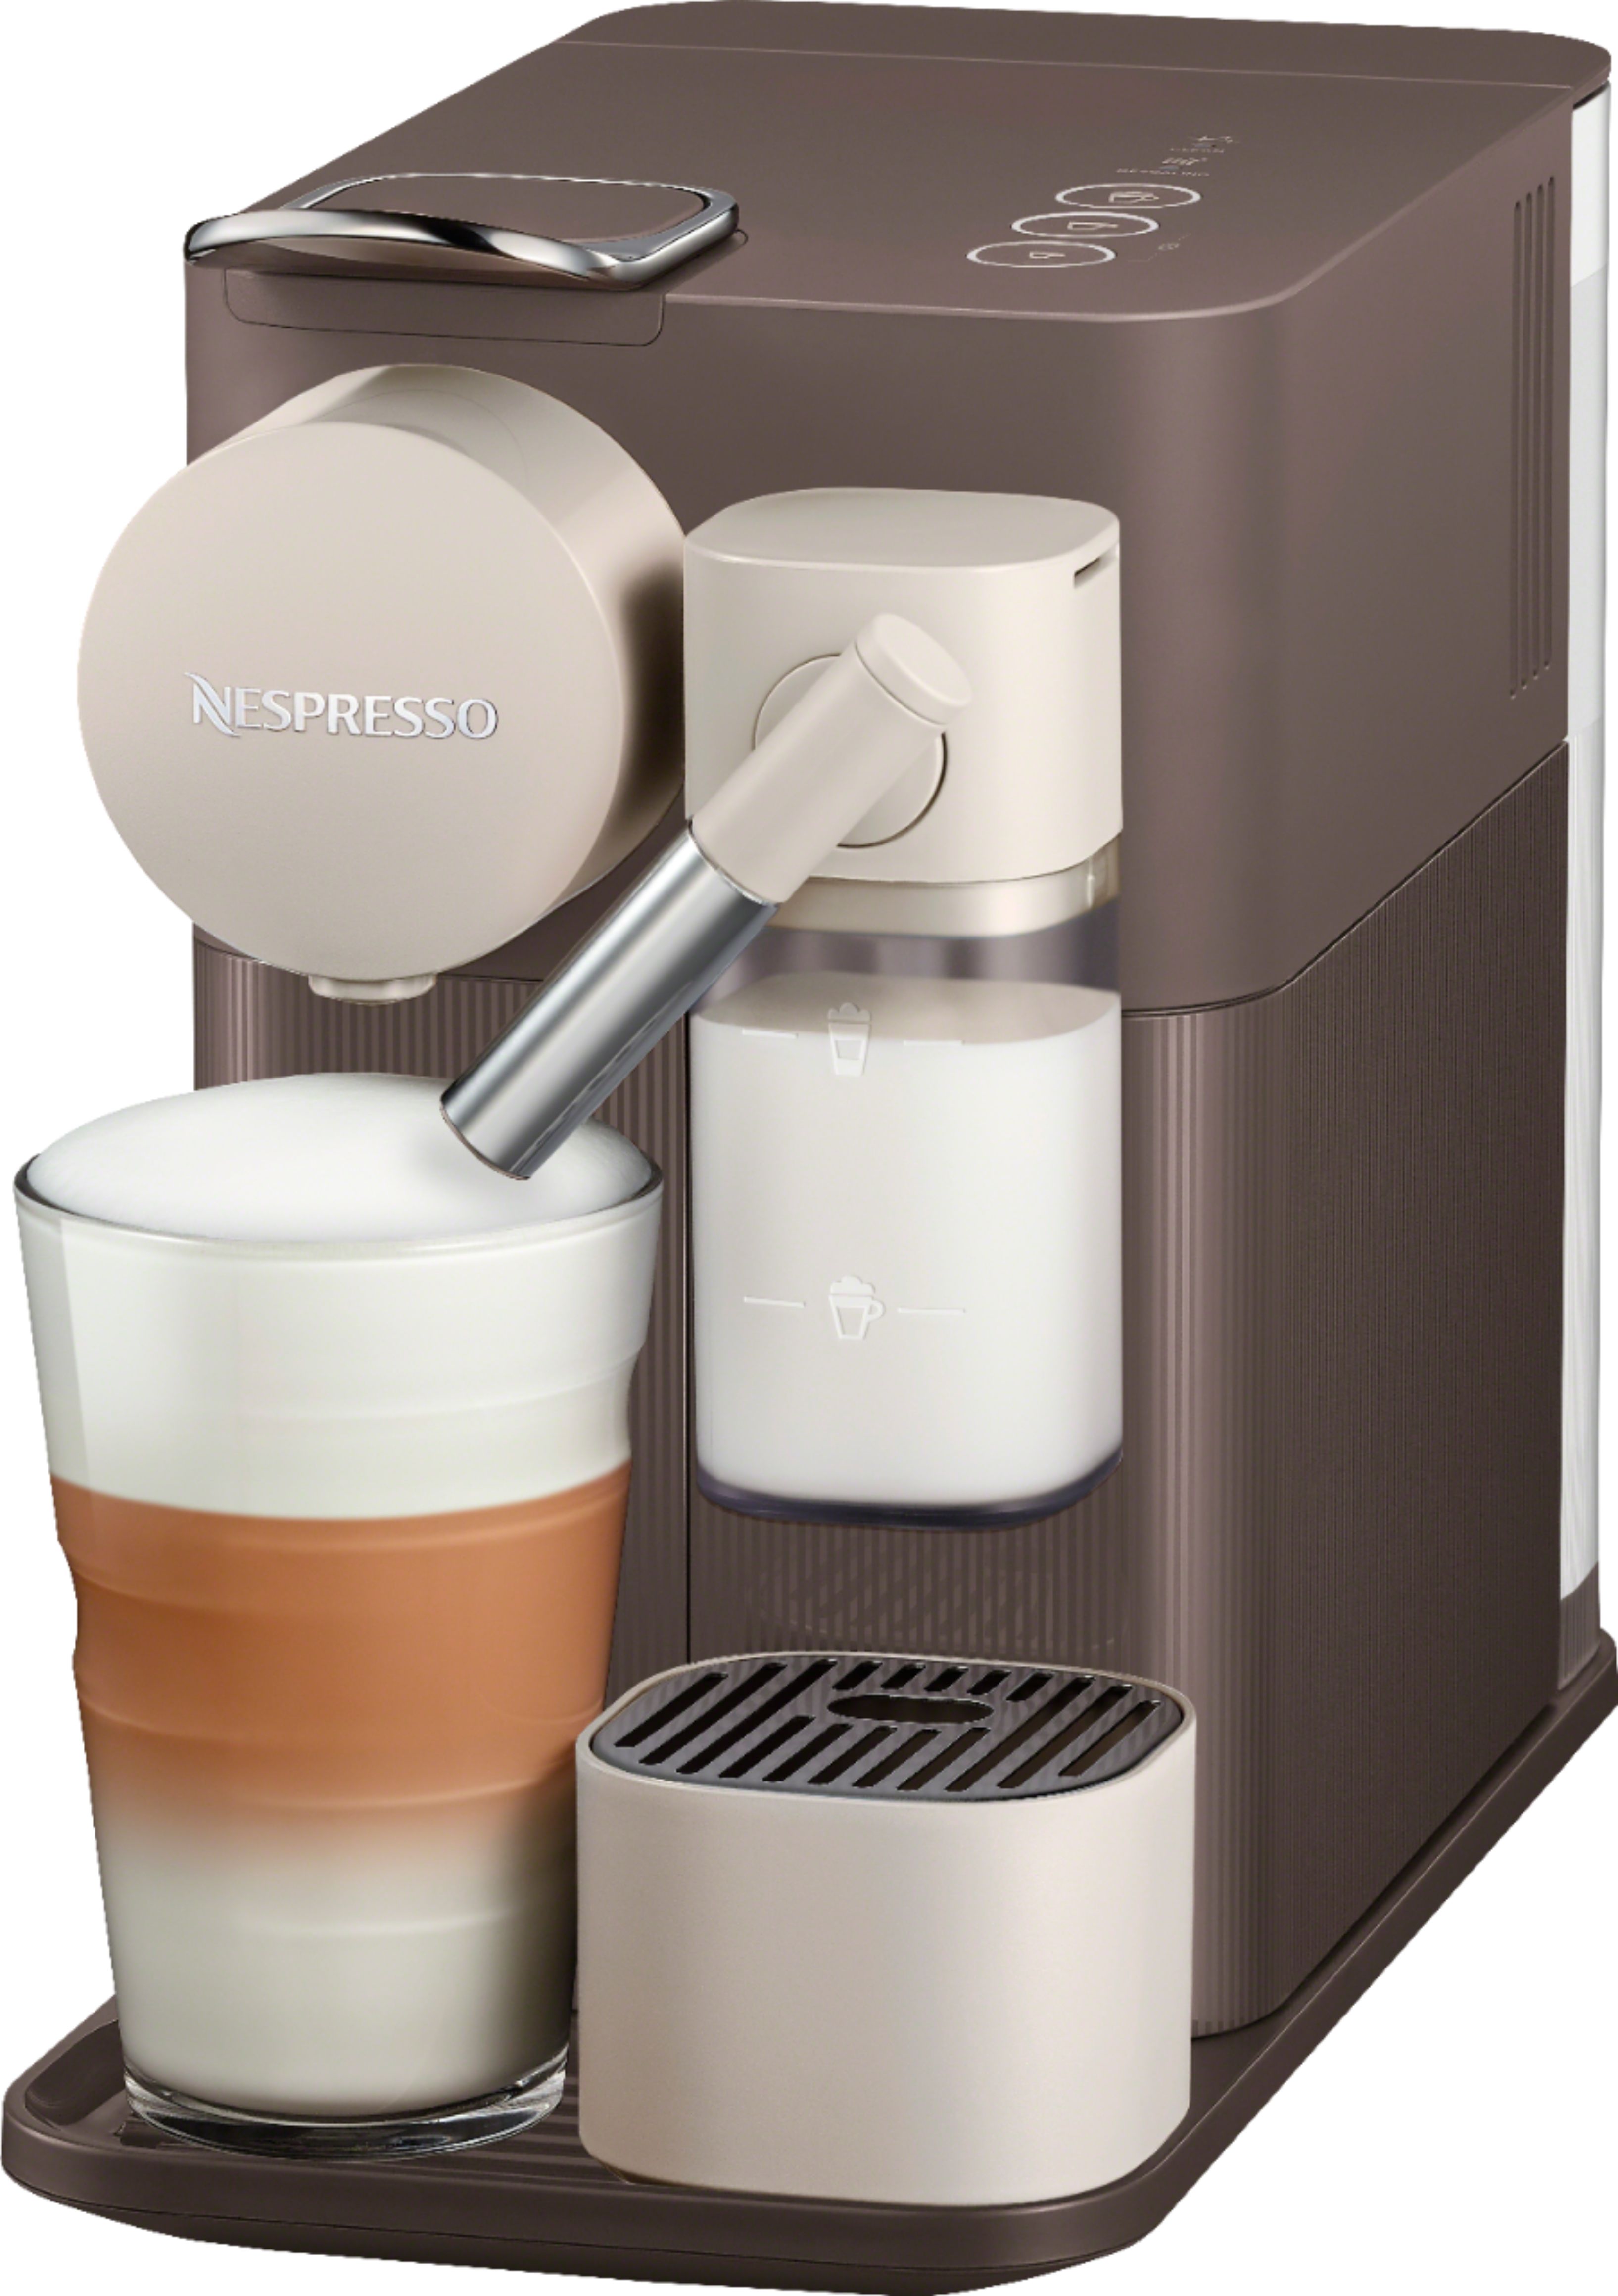 Best Buy: Nespresso Lattissima One Espresso Machine by DeLonghi